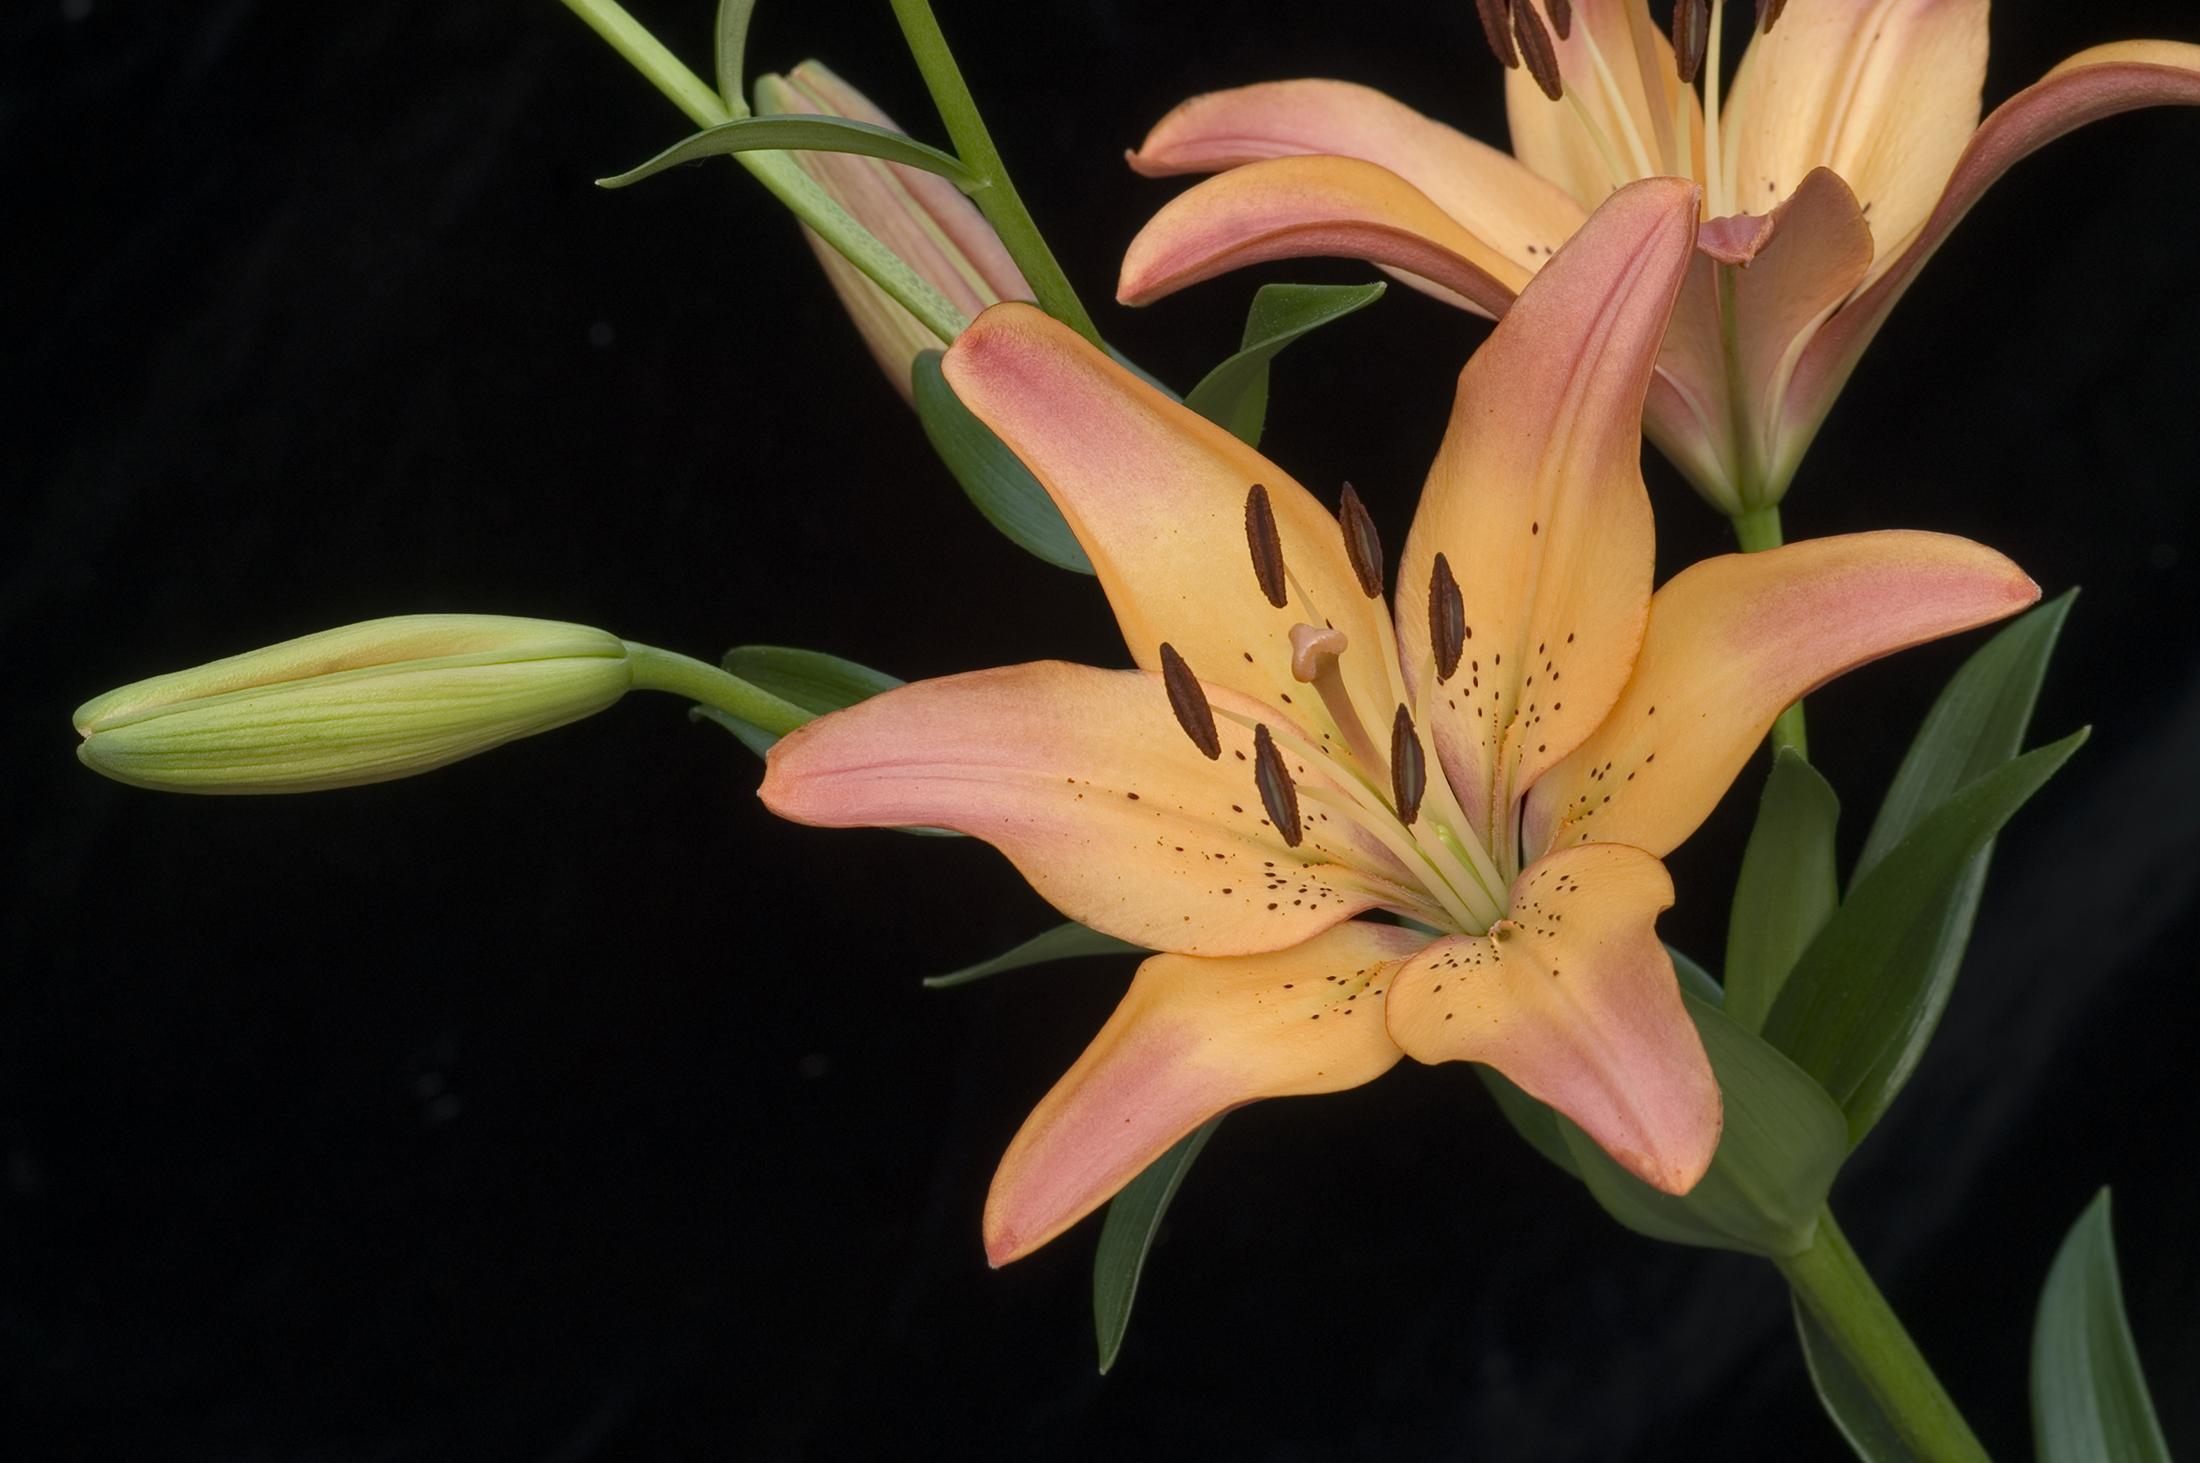 Lily LA hybrid 'Royal Sunset' flower